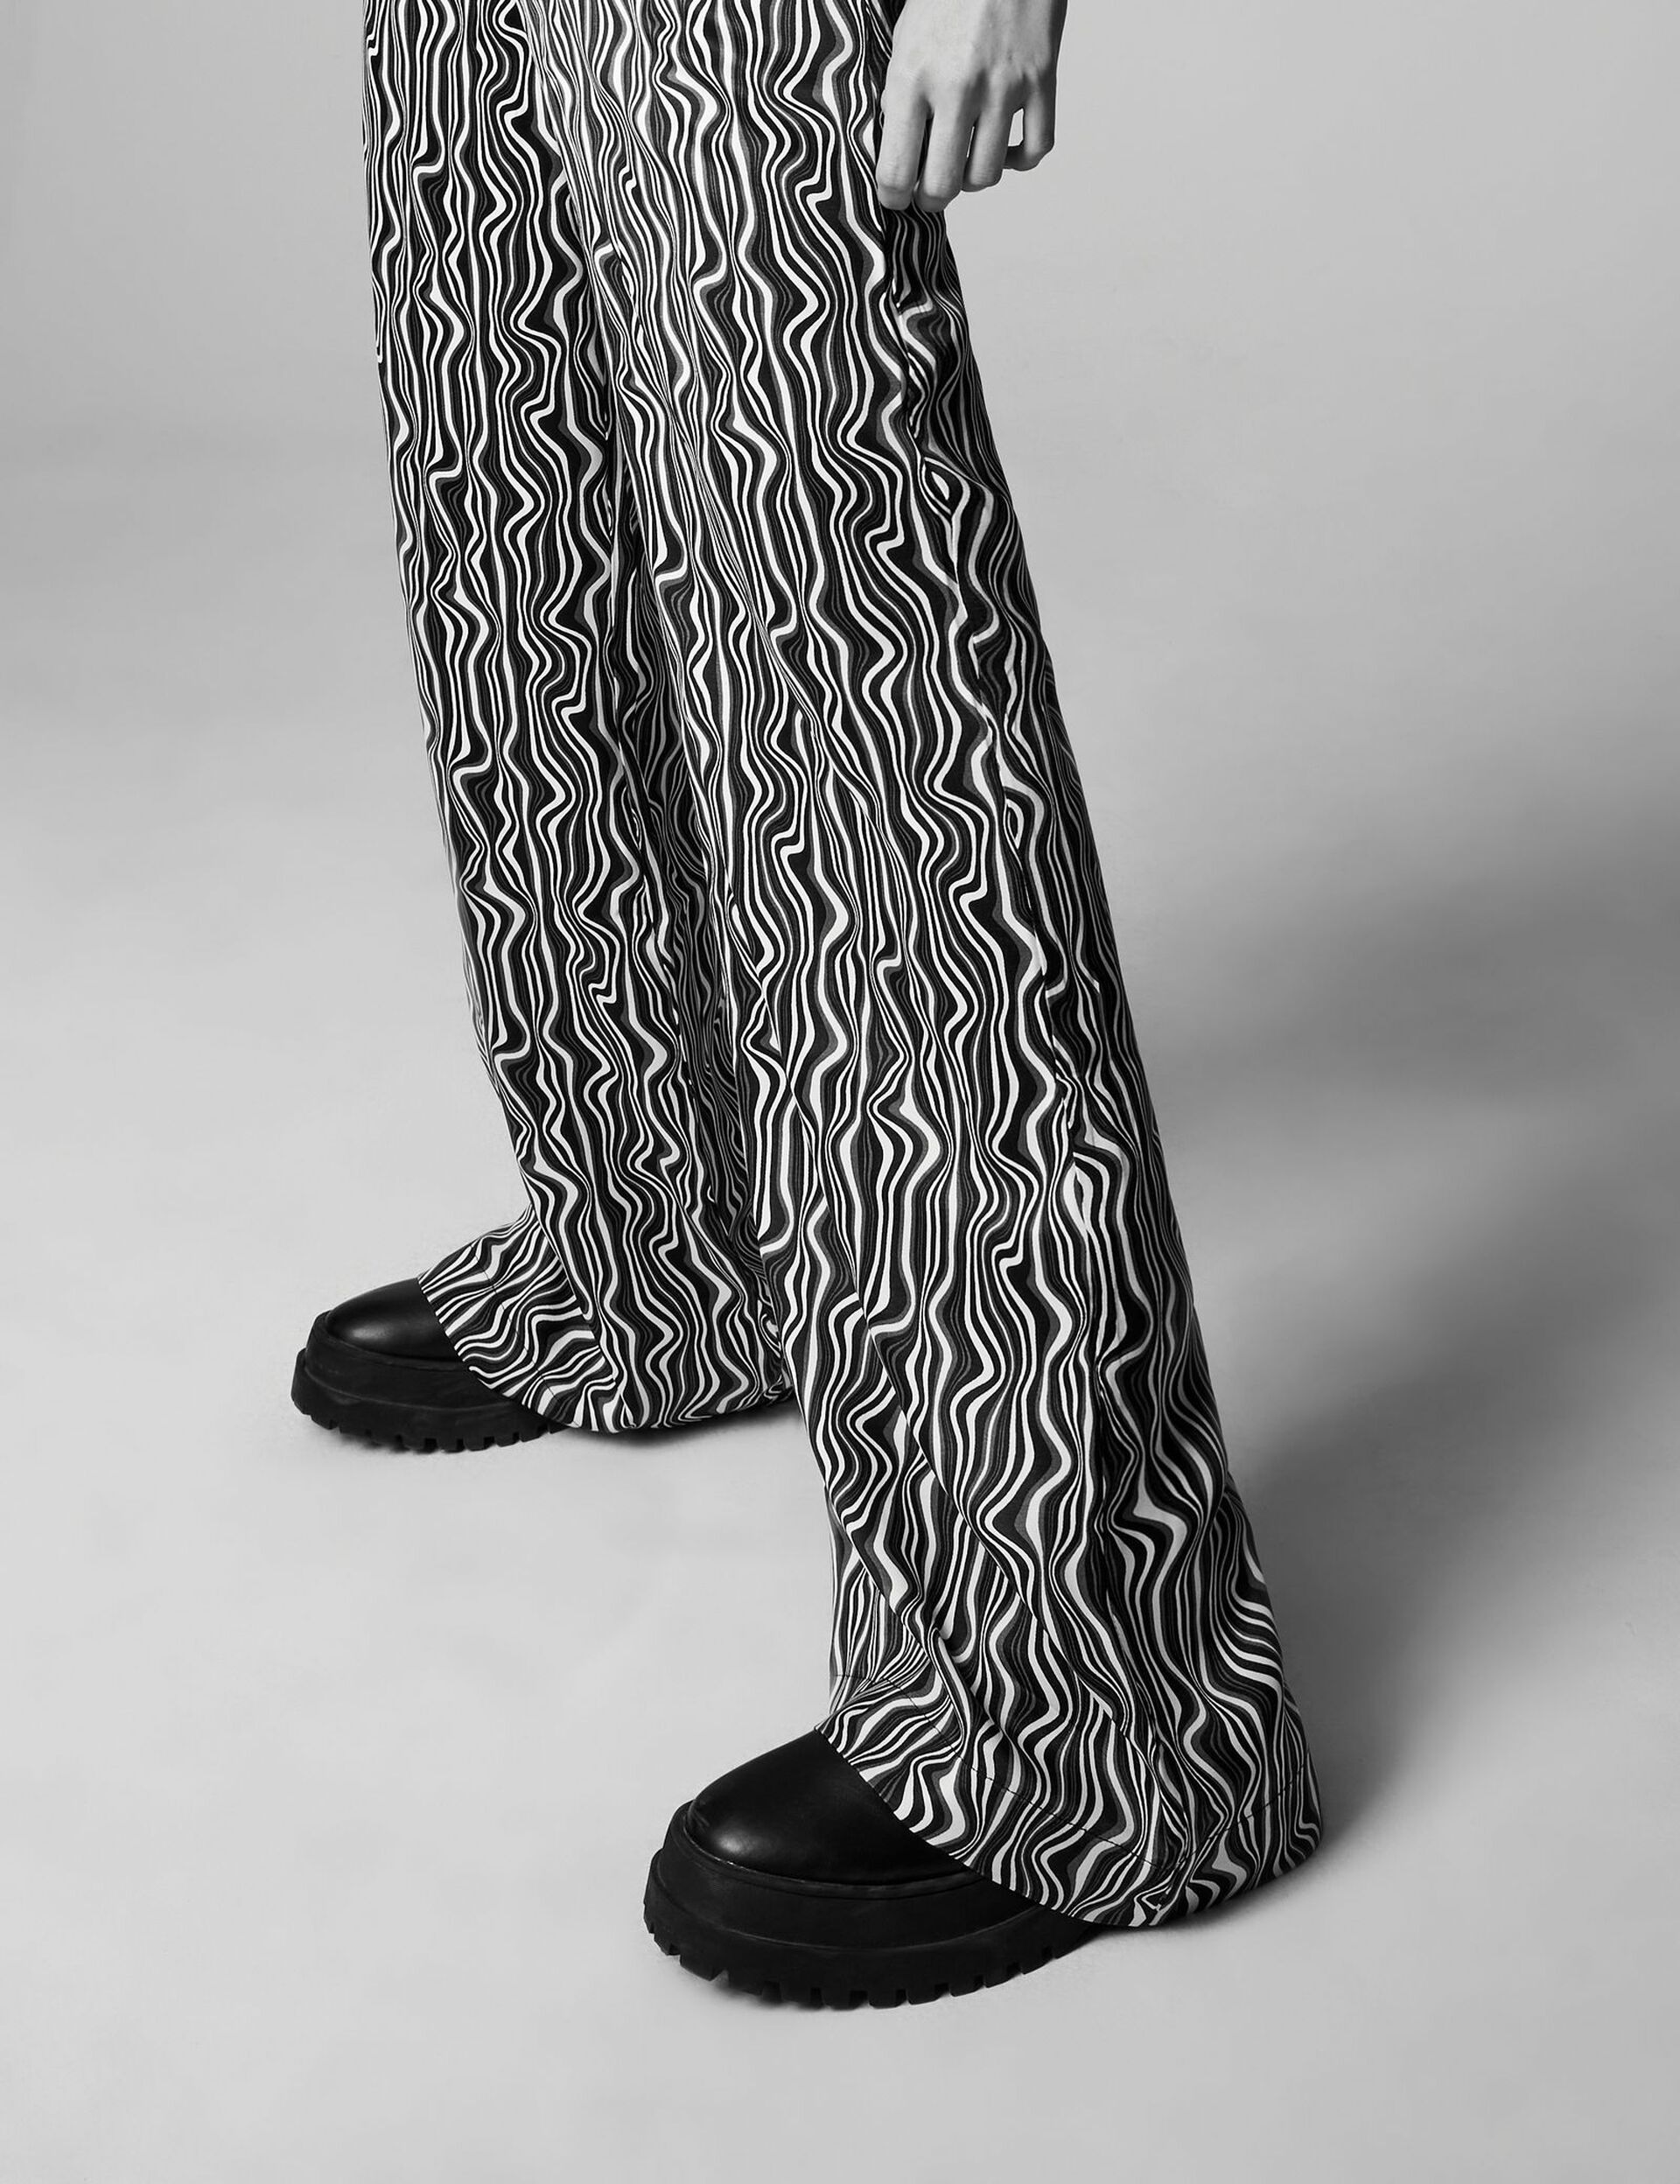 Pantalon fluide motif vagues noir, gris et blanc